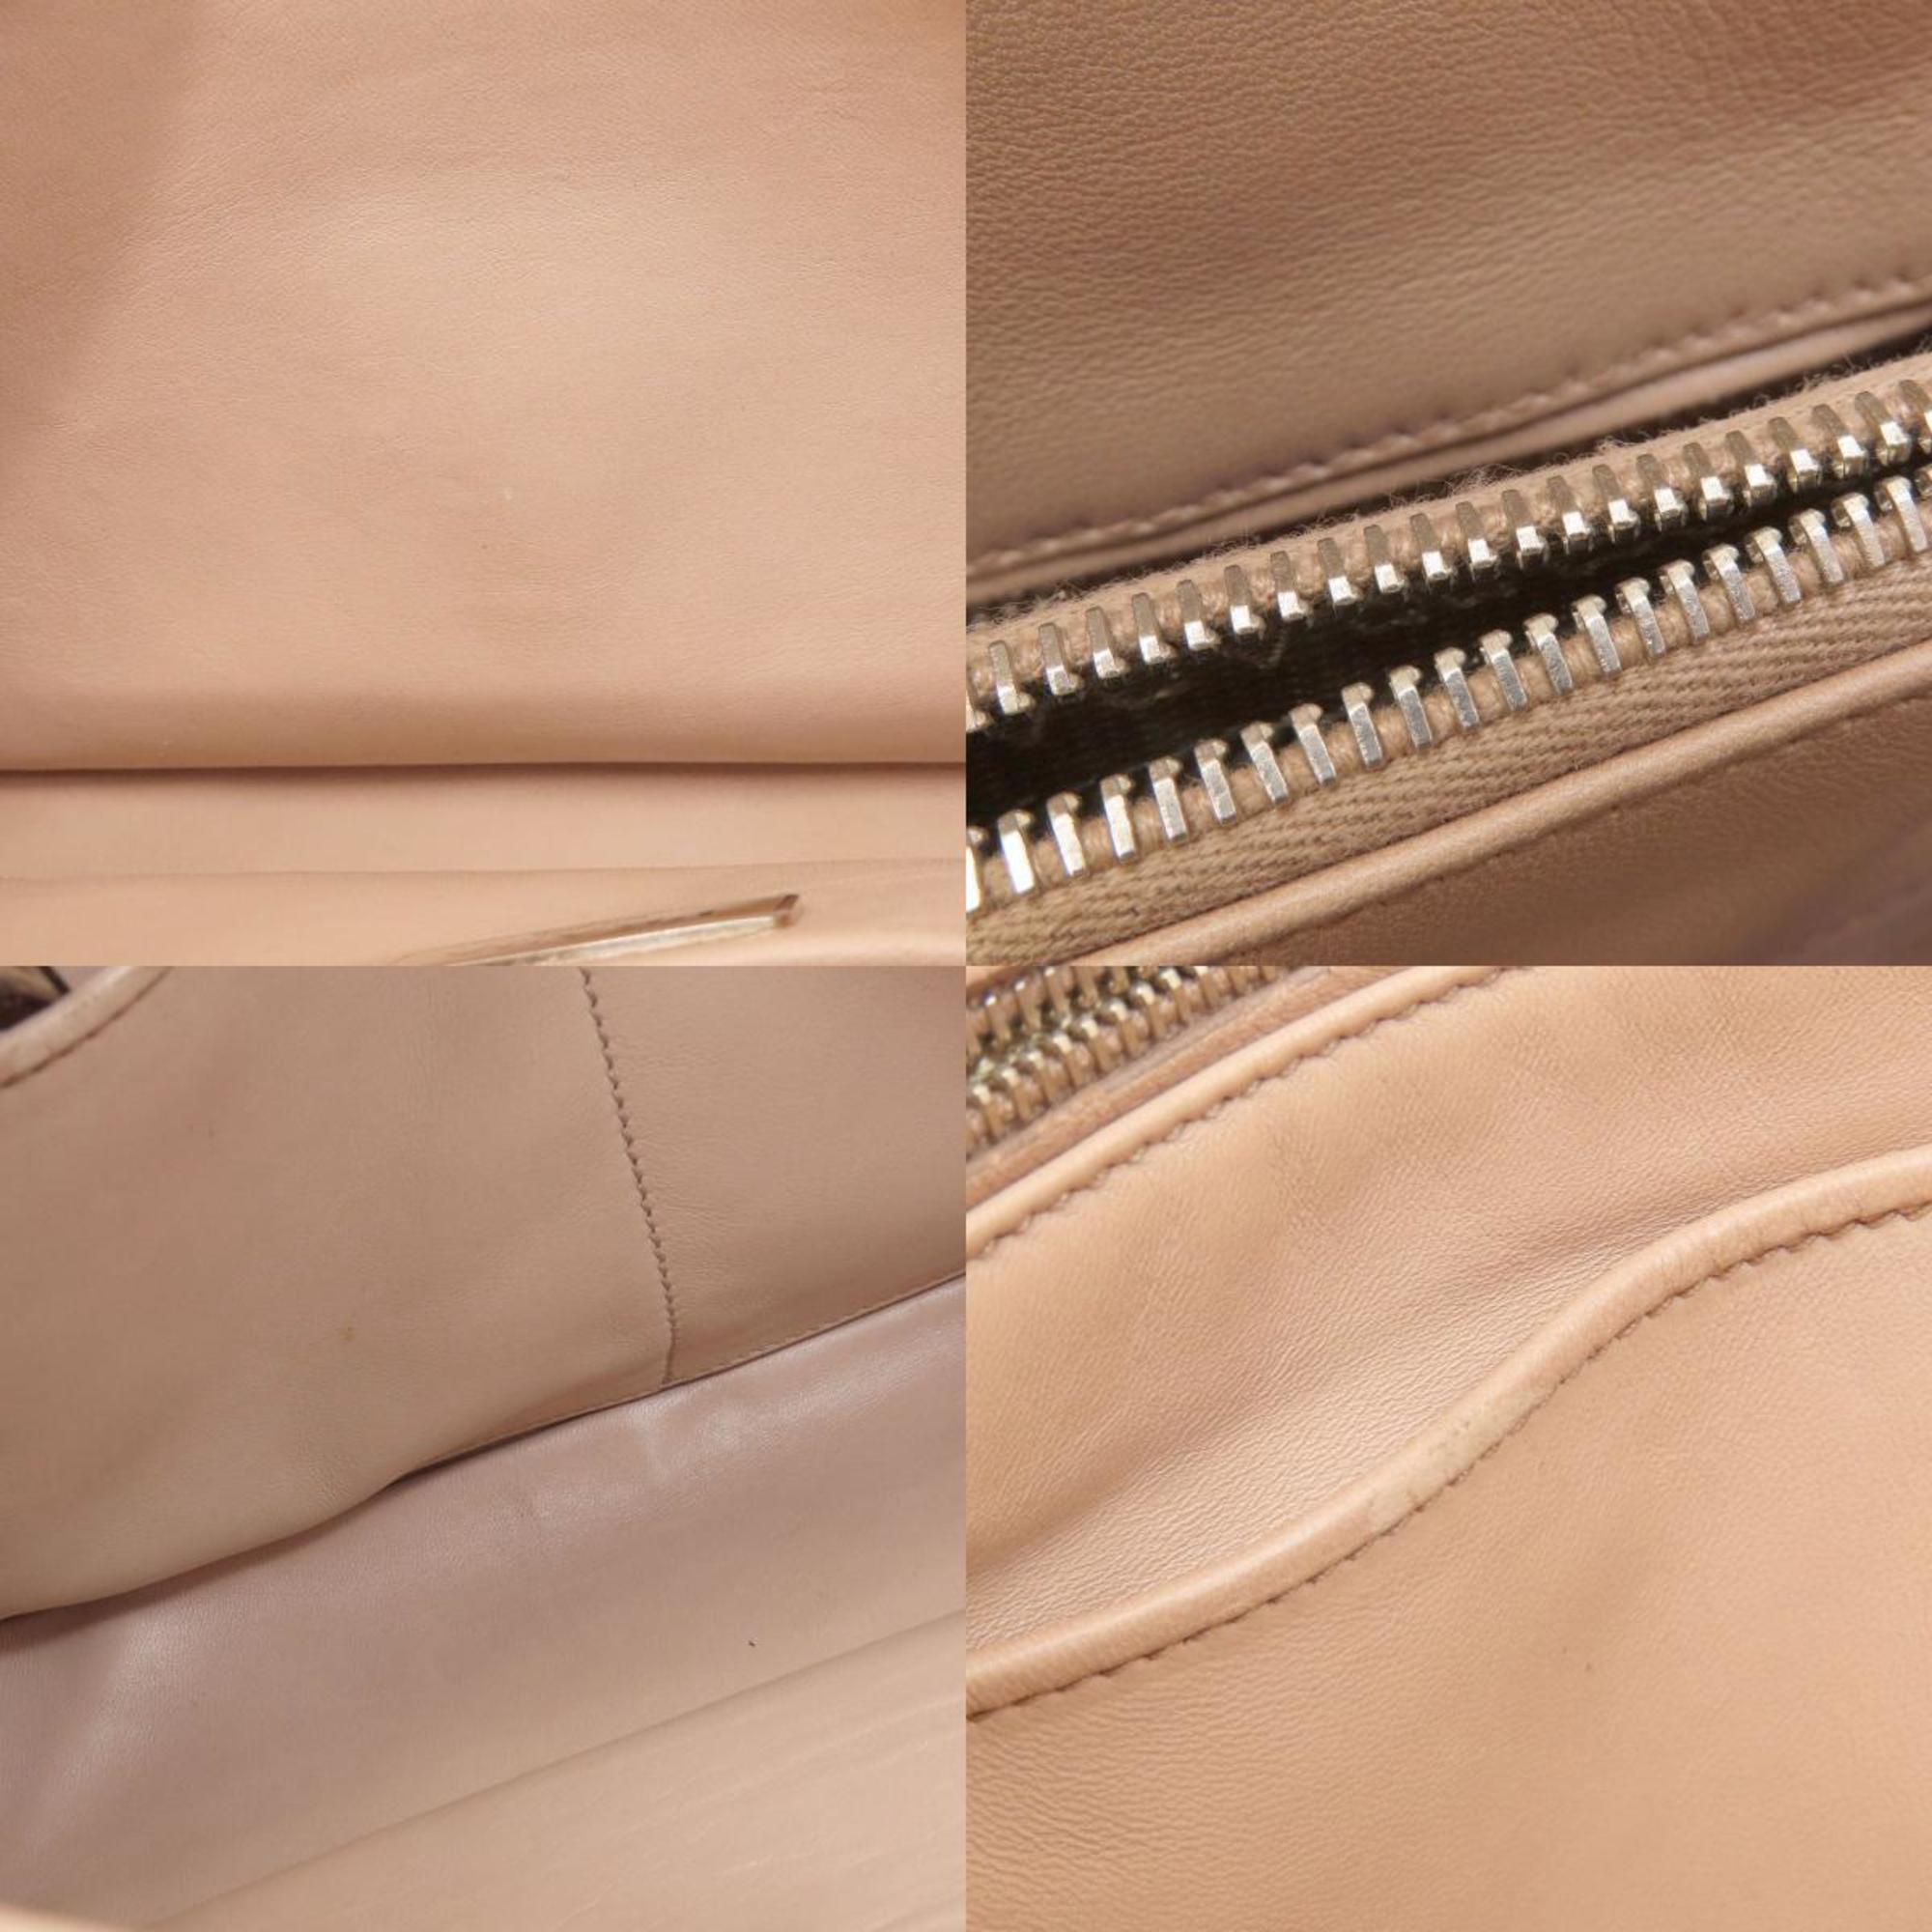 Prada handbags in calf leather for women PRADA